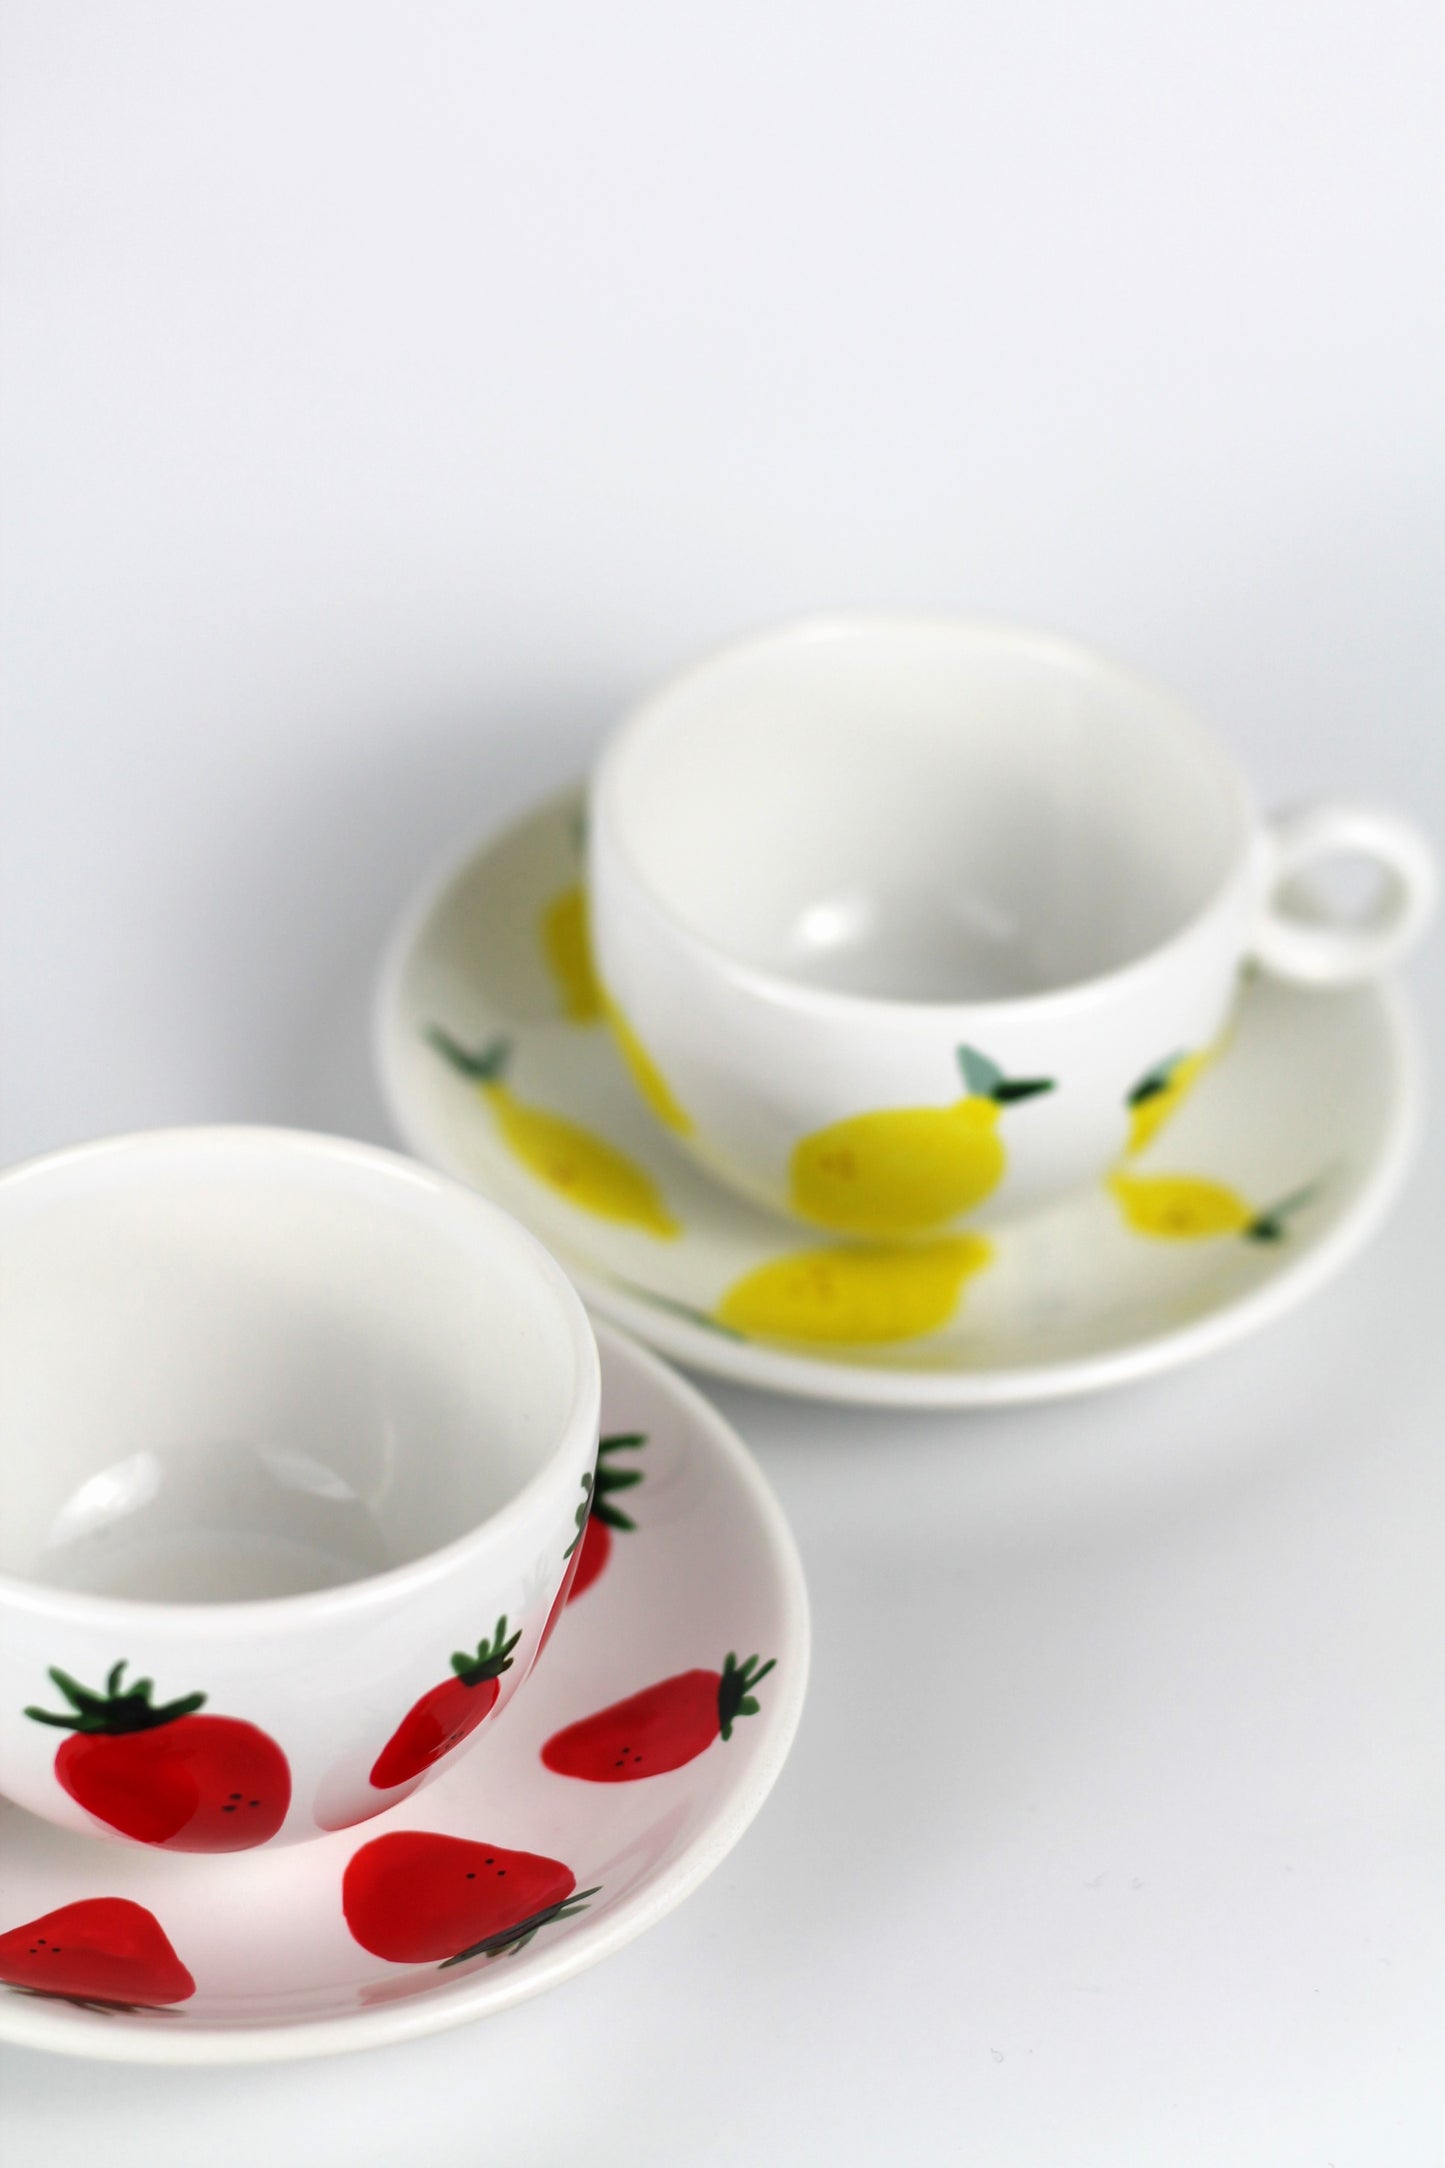 Porcelain FRUITY espresso mug and coaster set - Strawberry